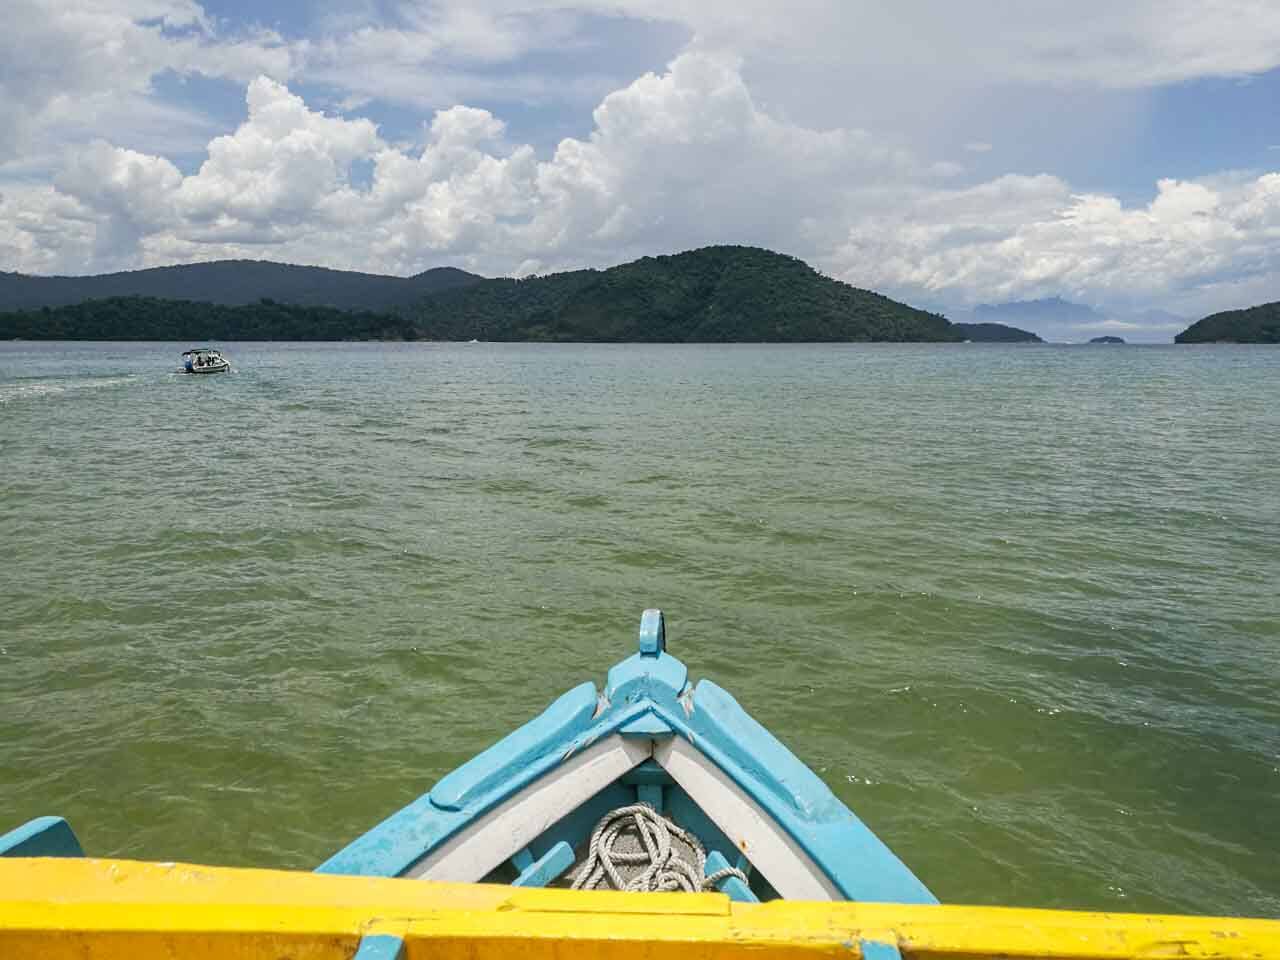 Passeio de barco no Saco do Mamanguá, Paraty. 